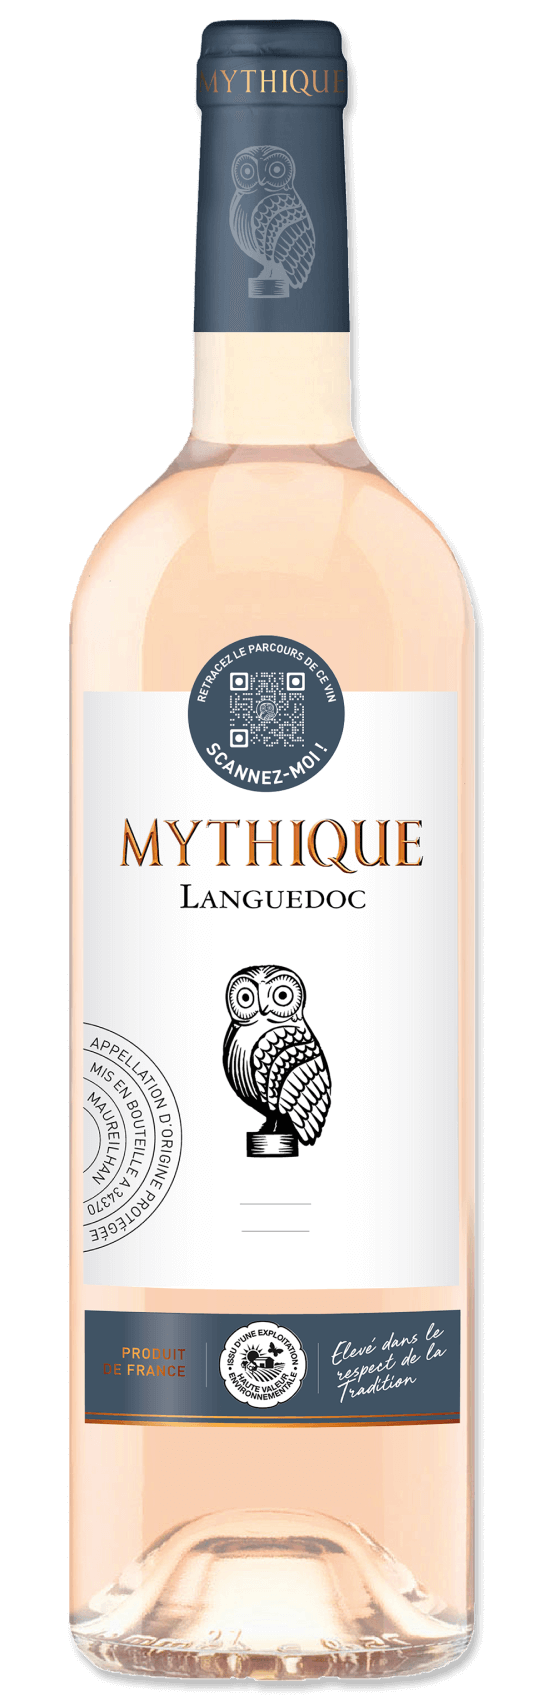 Die Mythique Languedoc - Mythique